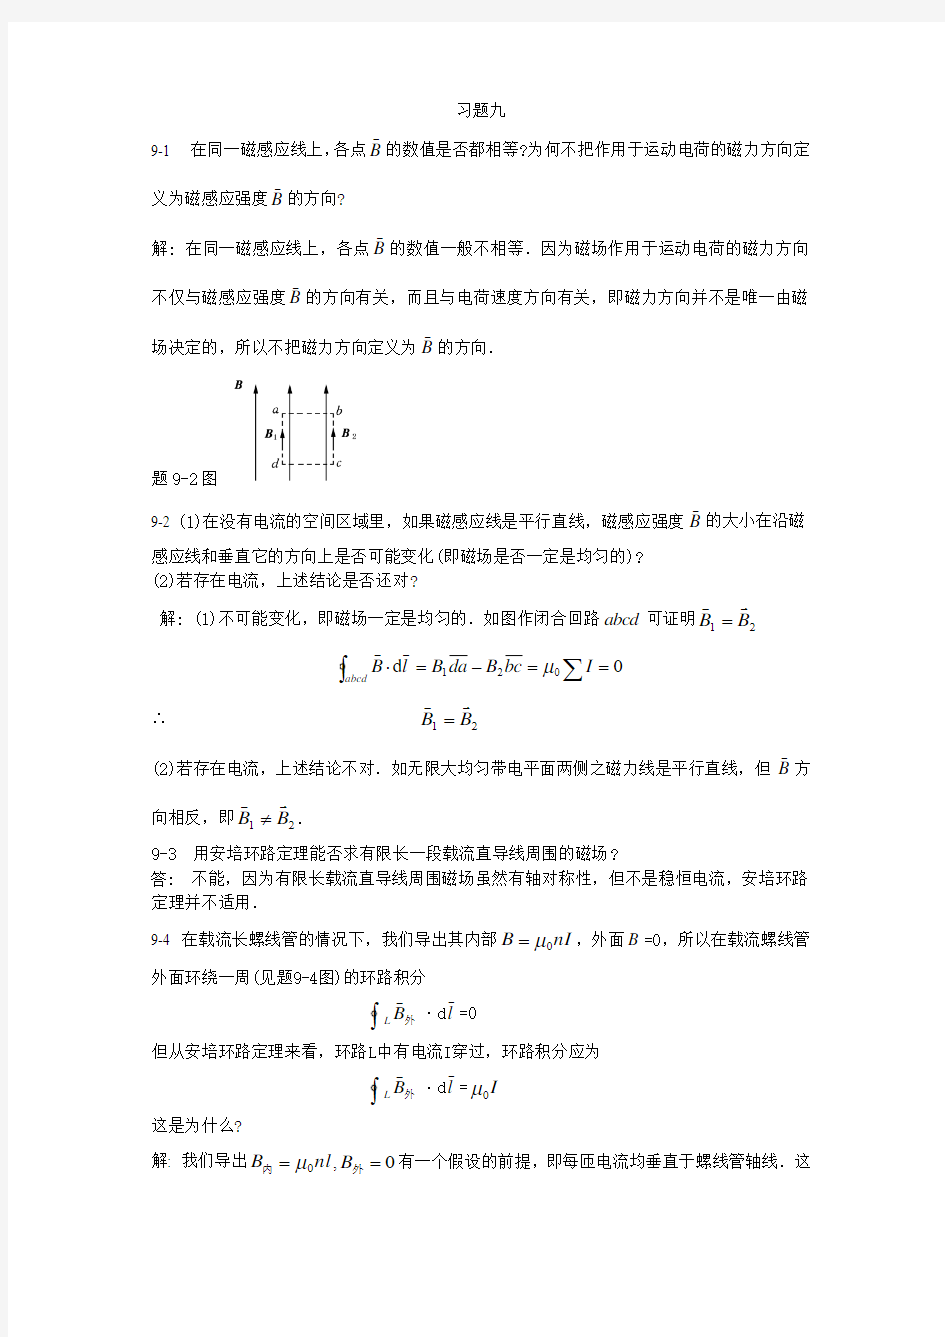 大学物理答案(赵近芳 第二版)下册 习题9